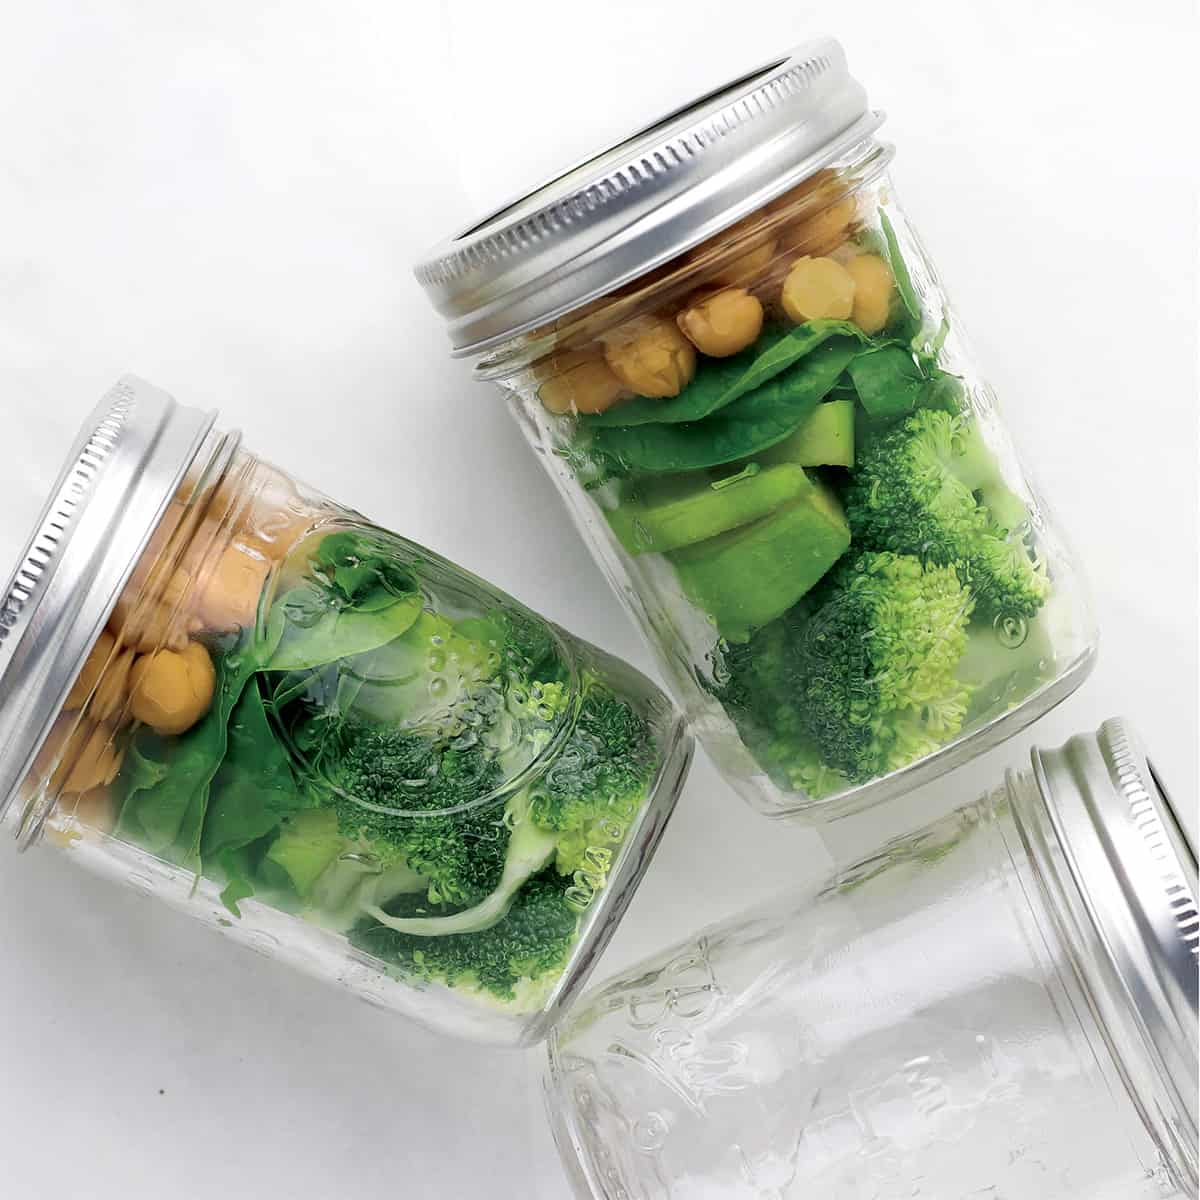 jarred vegetables for vegetables for smoothies.